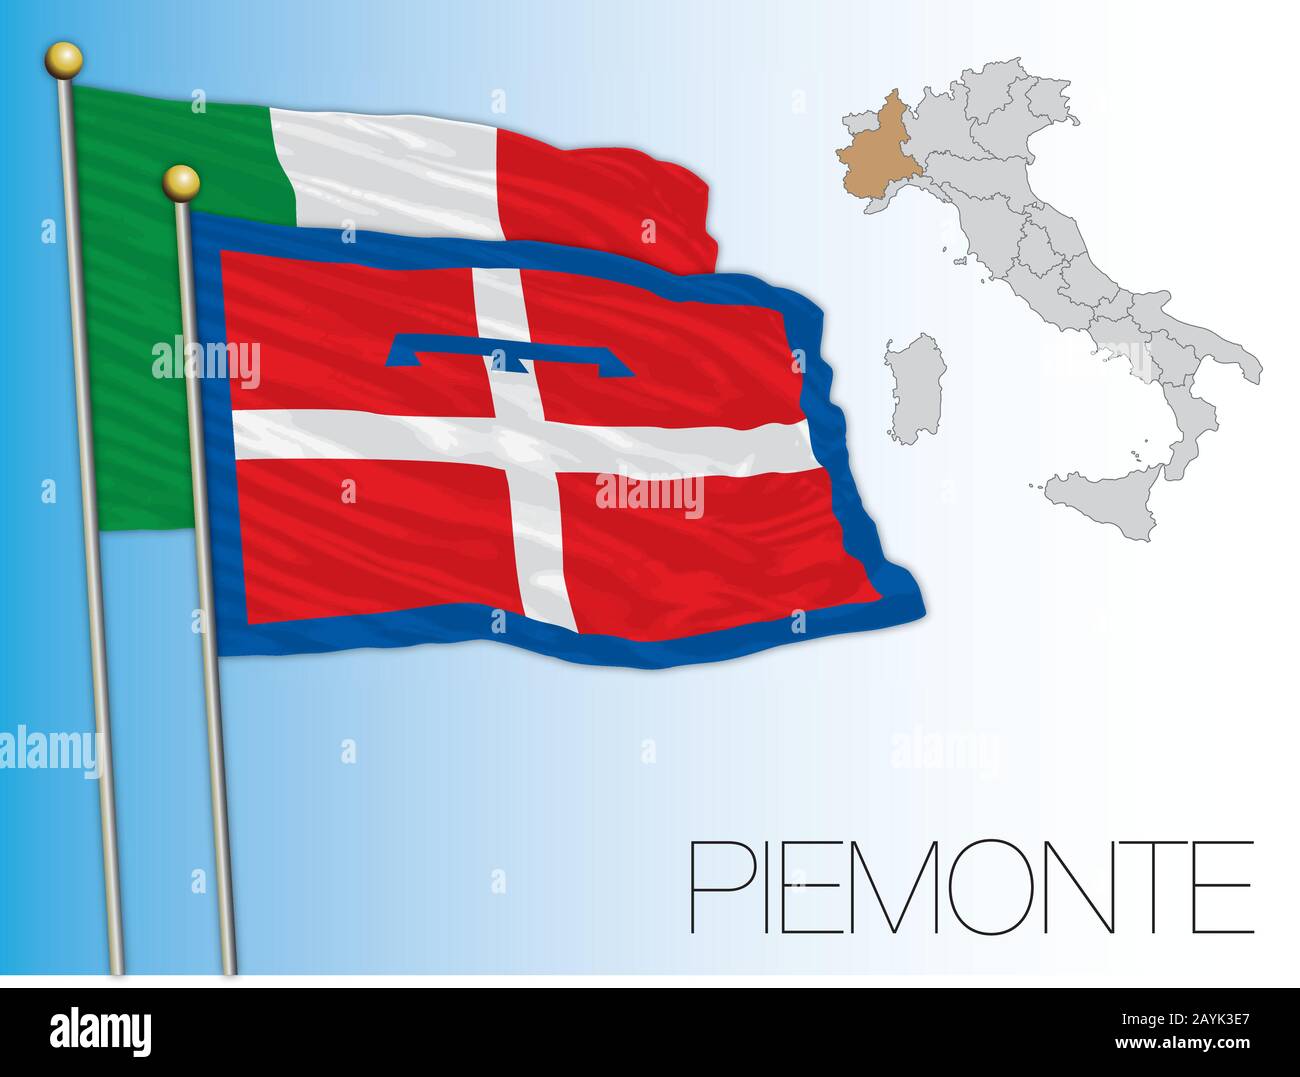 Piemonte offizielle regionale Flagge und Karte, Italien, Vektorgrafiken Stock Vektor